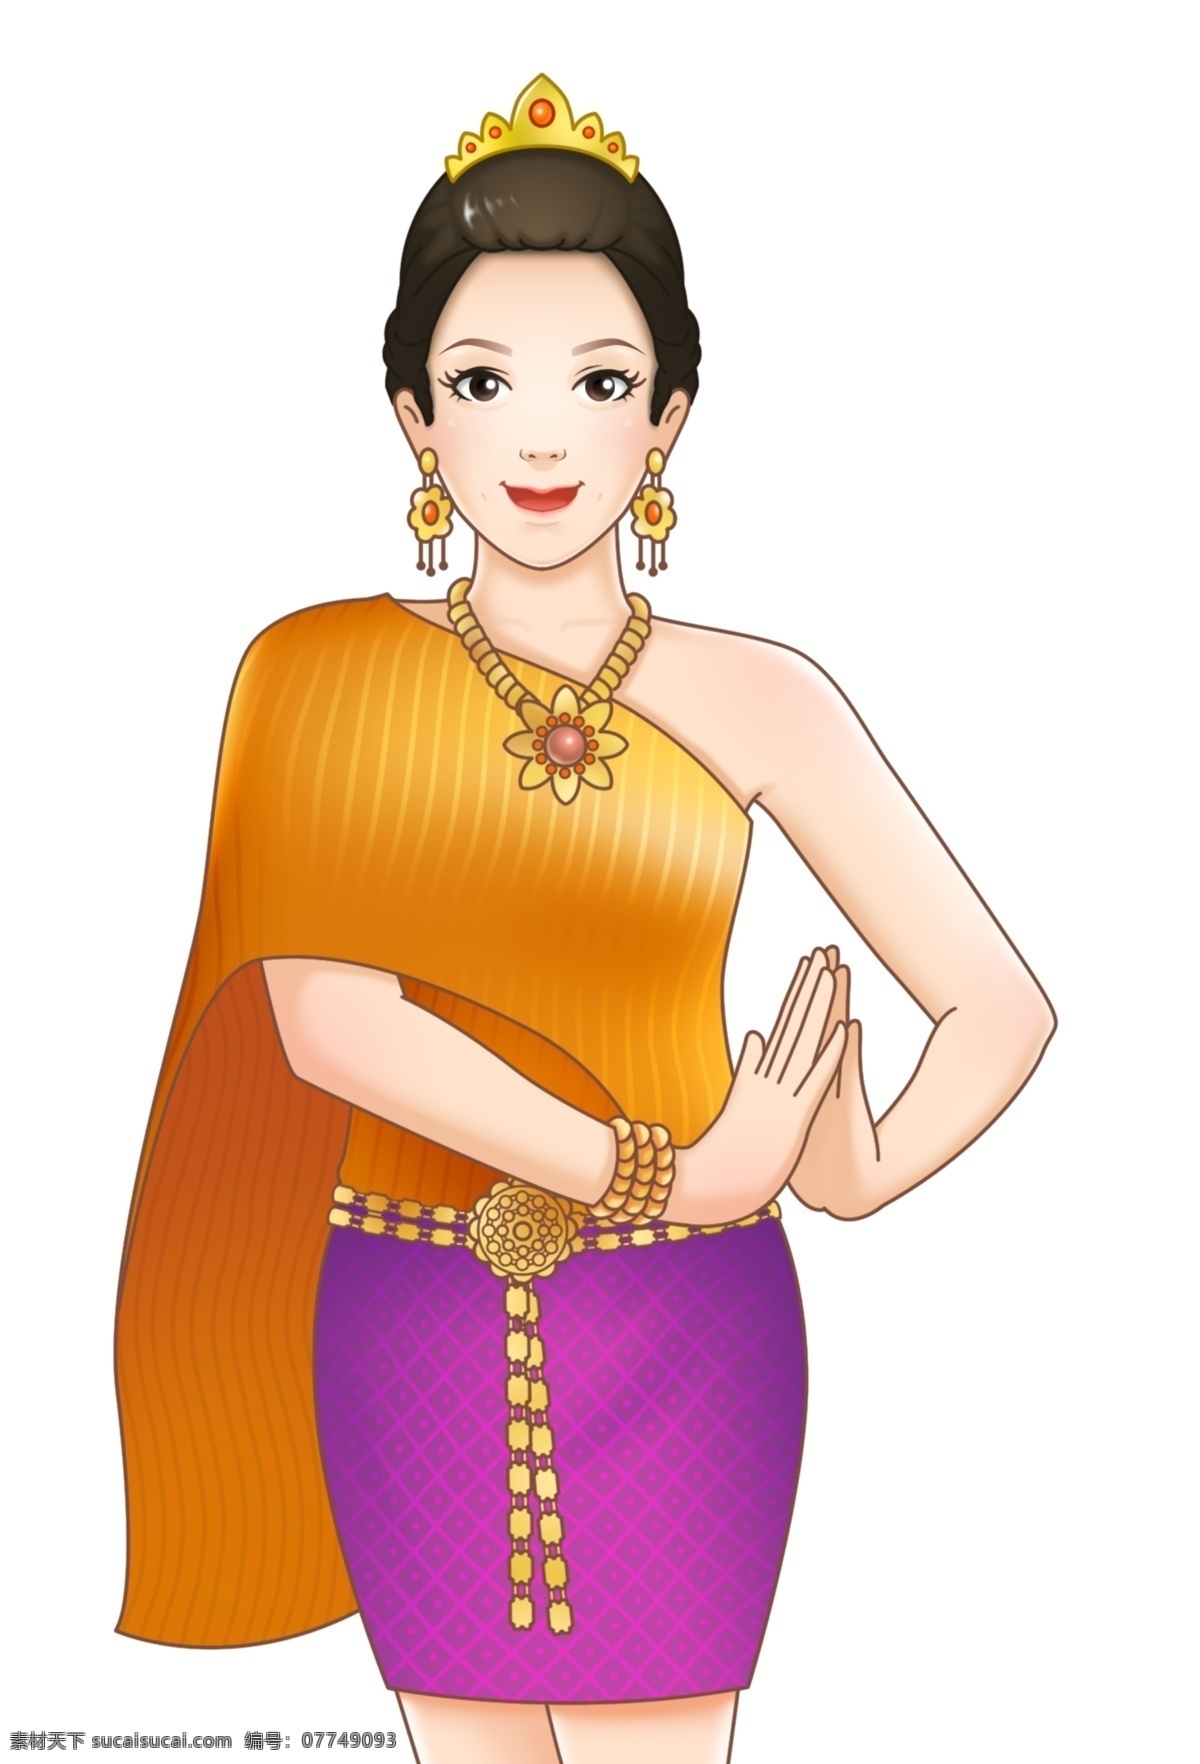 泰国女人 泰国 风情 女人 手绘 插画 角色 卡通 皇冠 项链 风俗 民族 金色 动漫动画 动漫人物